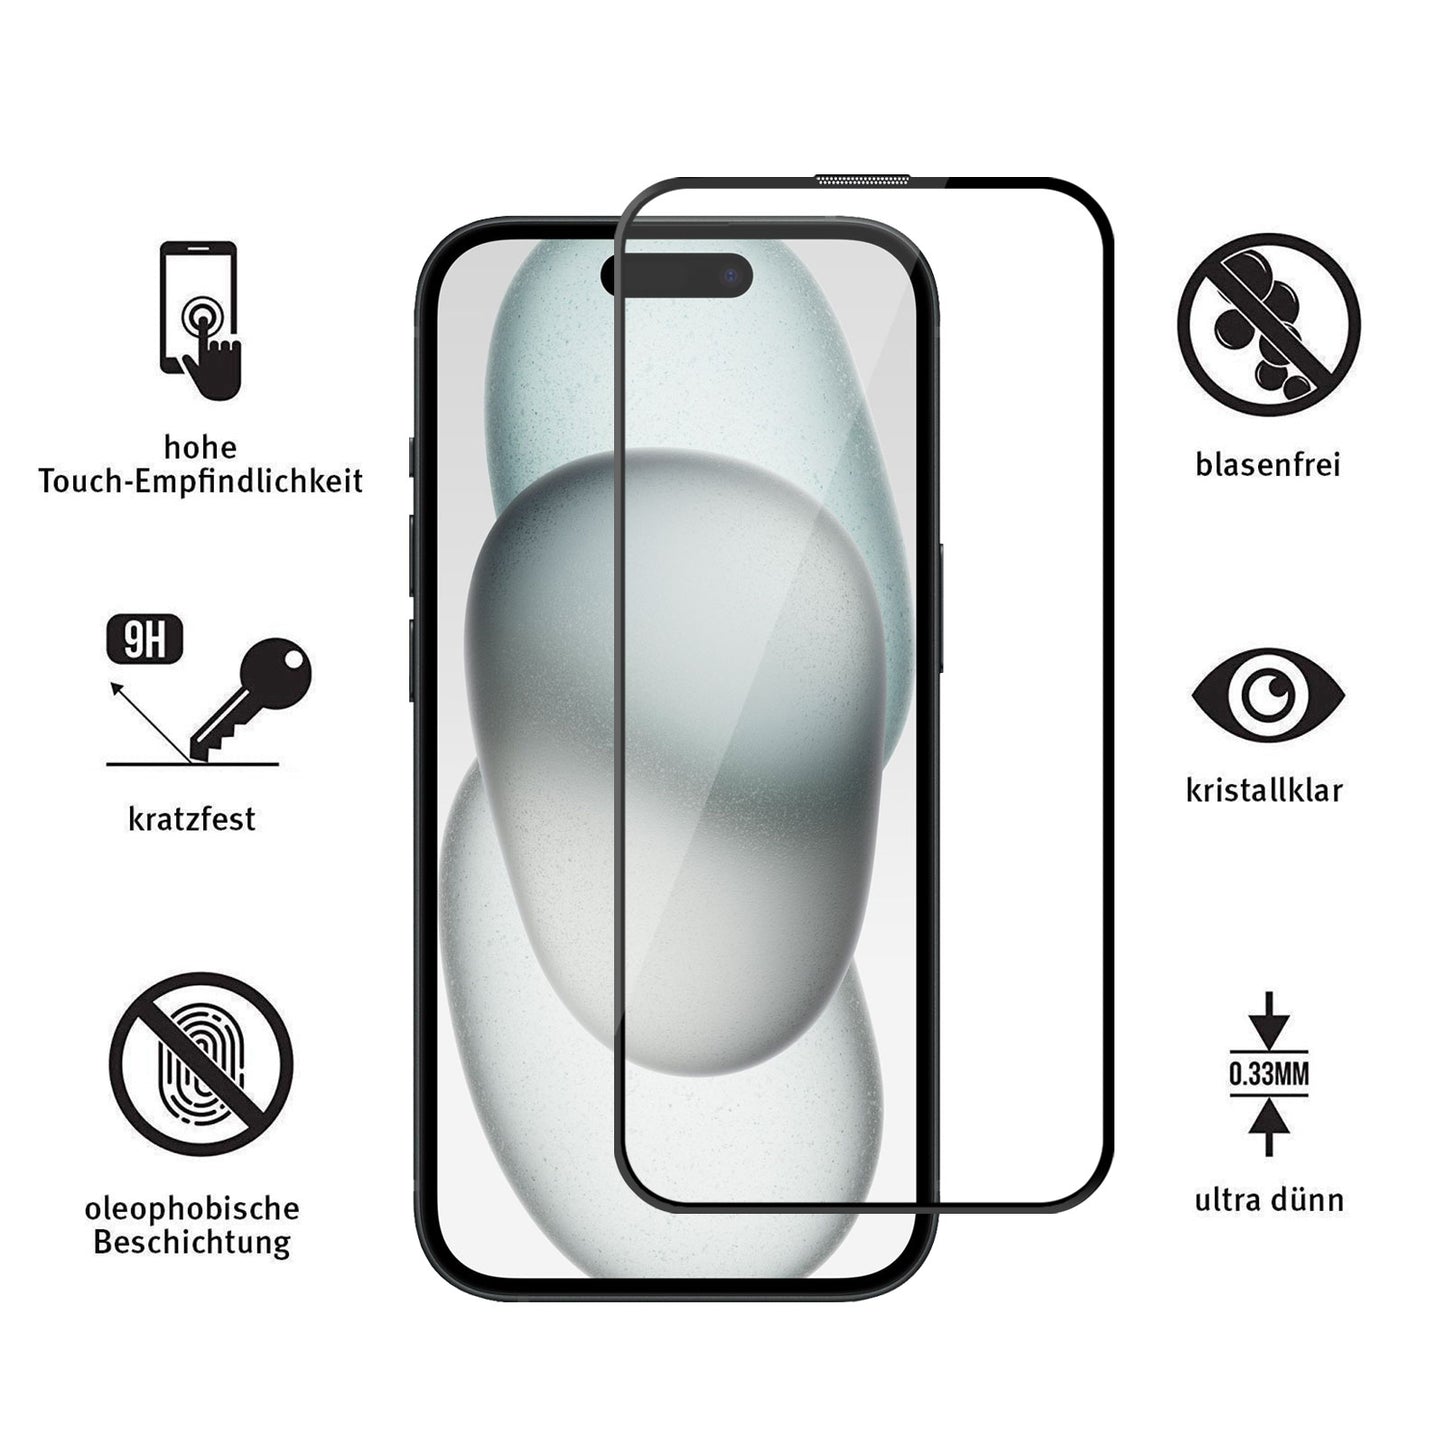 ArktisPRO iPhone 15 FULL COVER Displayschutz GLAS - hüllenfreundlich